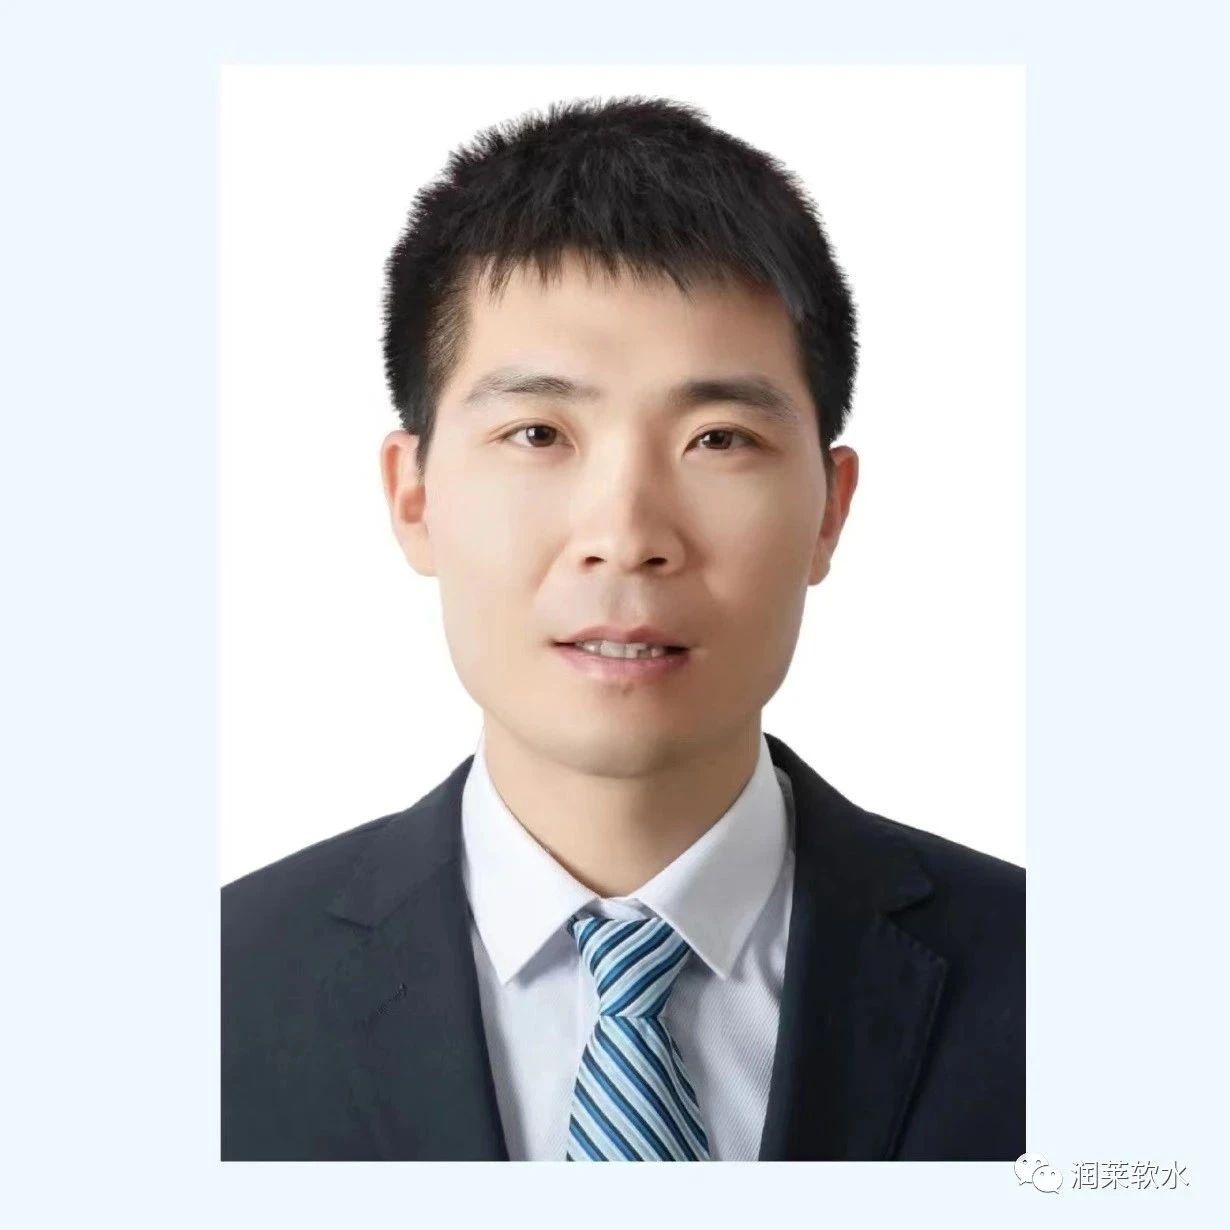 【快讯】润新党支部书记、生产部经理王少伟获选温州市人大代表